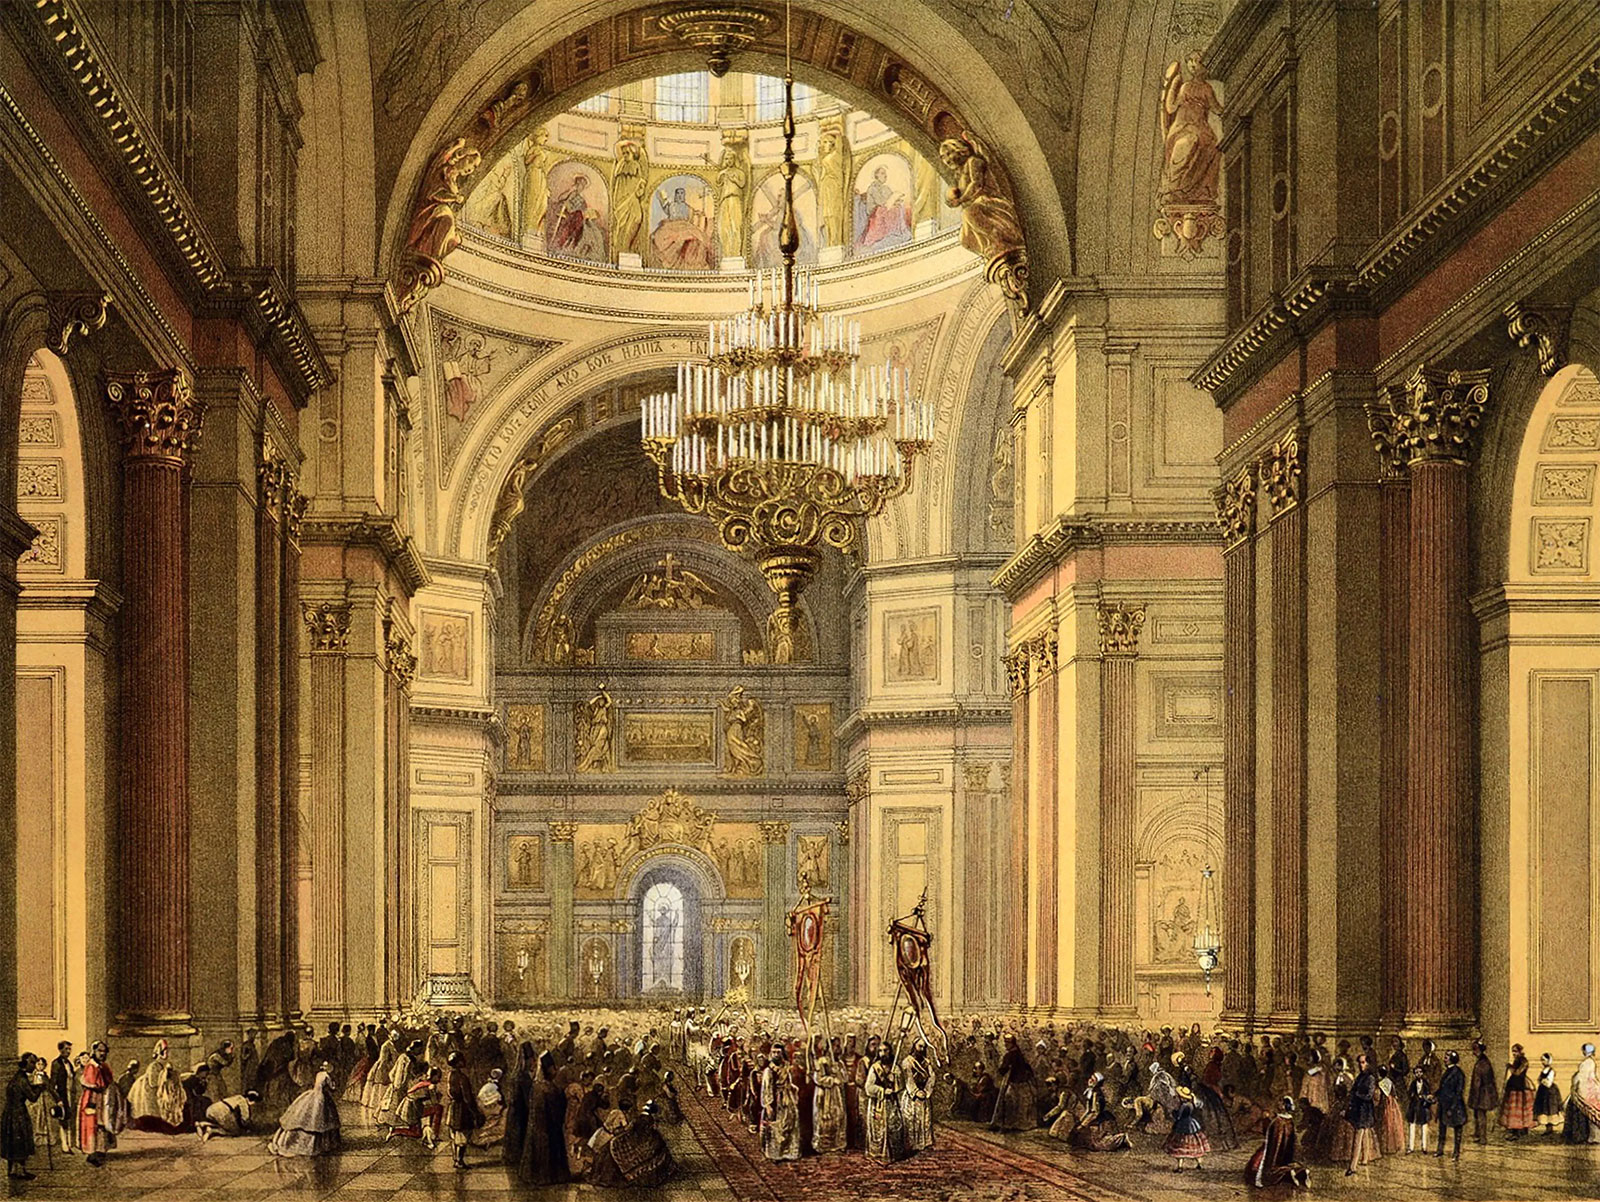 Внутри Исаакиевского собора, 1858-1860 гг., автор рисунка Шарлемань И.И.